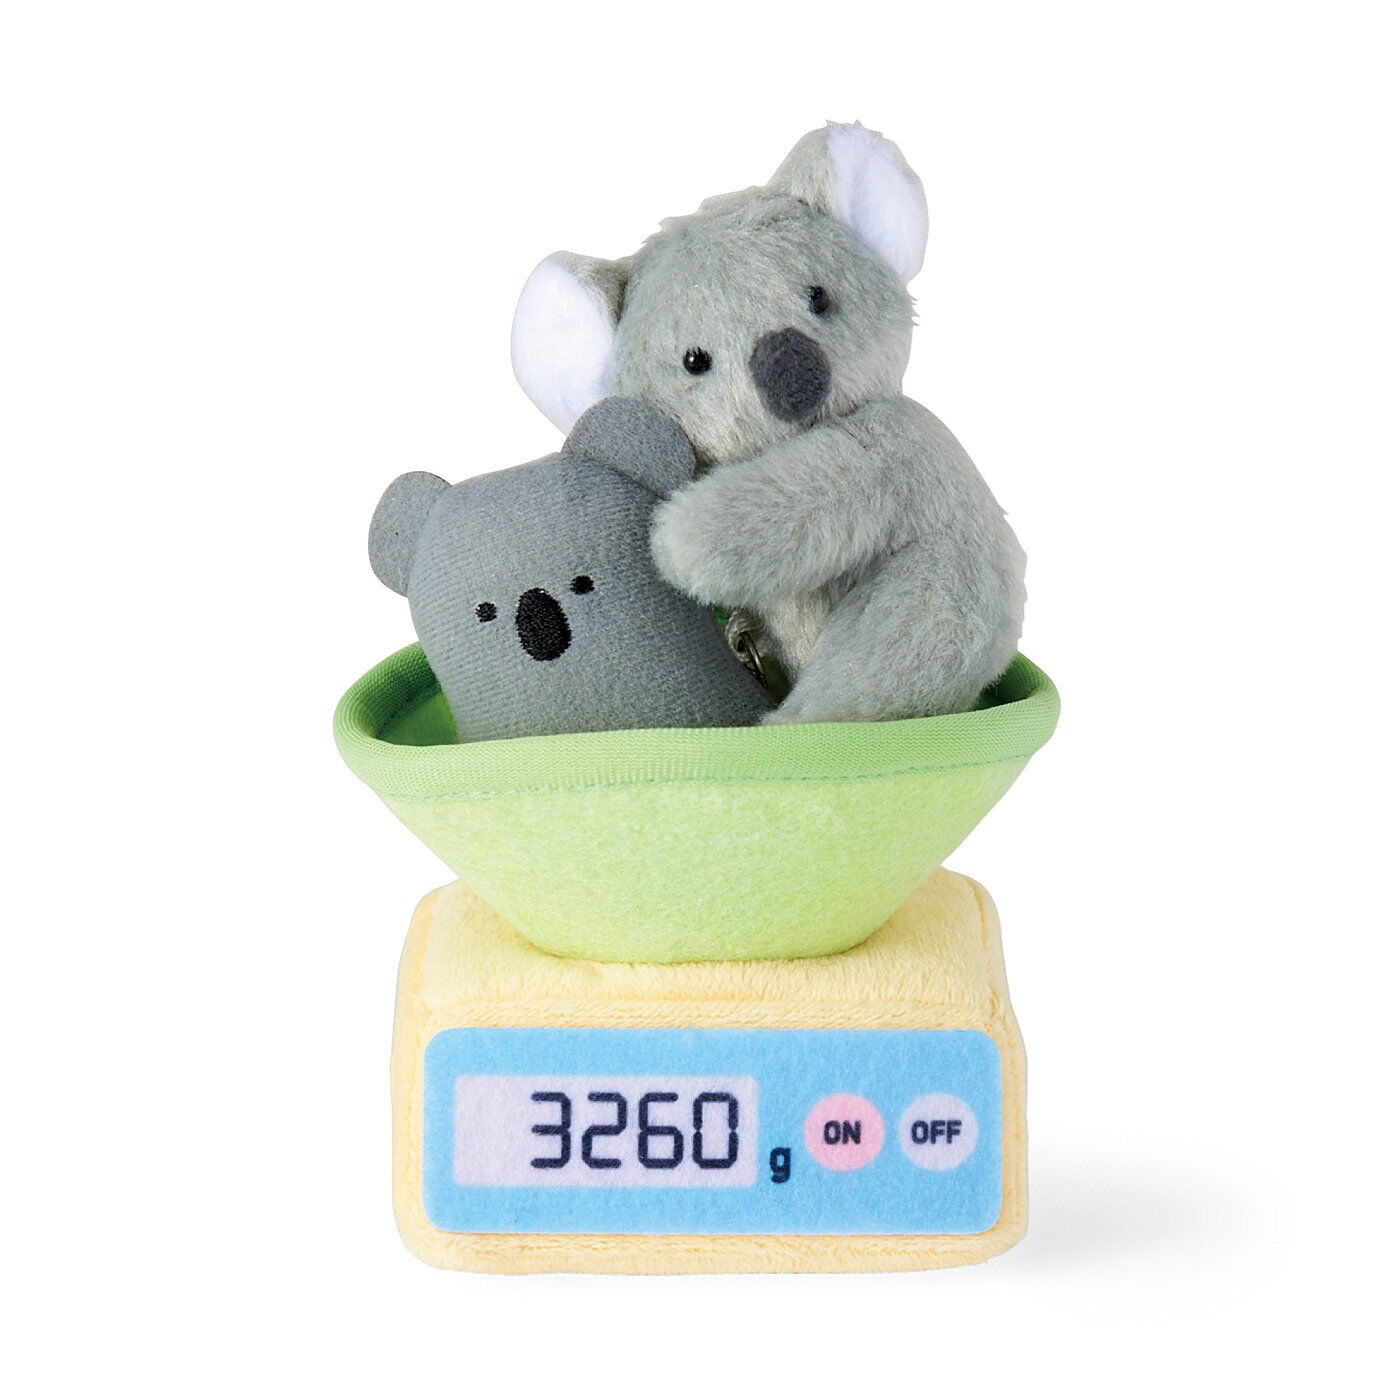 Real Stock|YOU+MORE!　動物園の赤ちゃんたちの体重測定キーマスコット|3:〈赤ちゃんコアラ〉